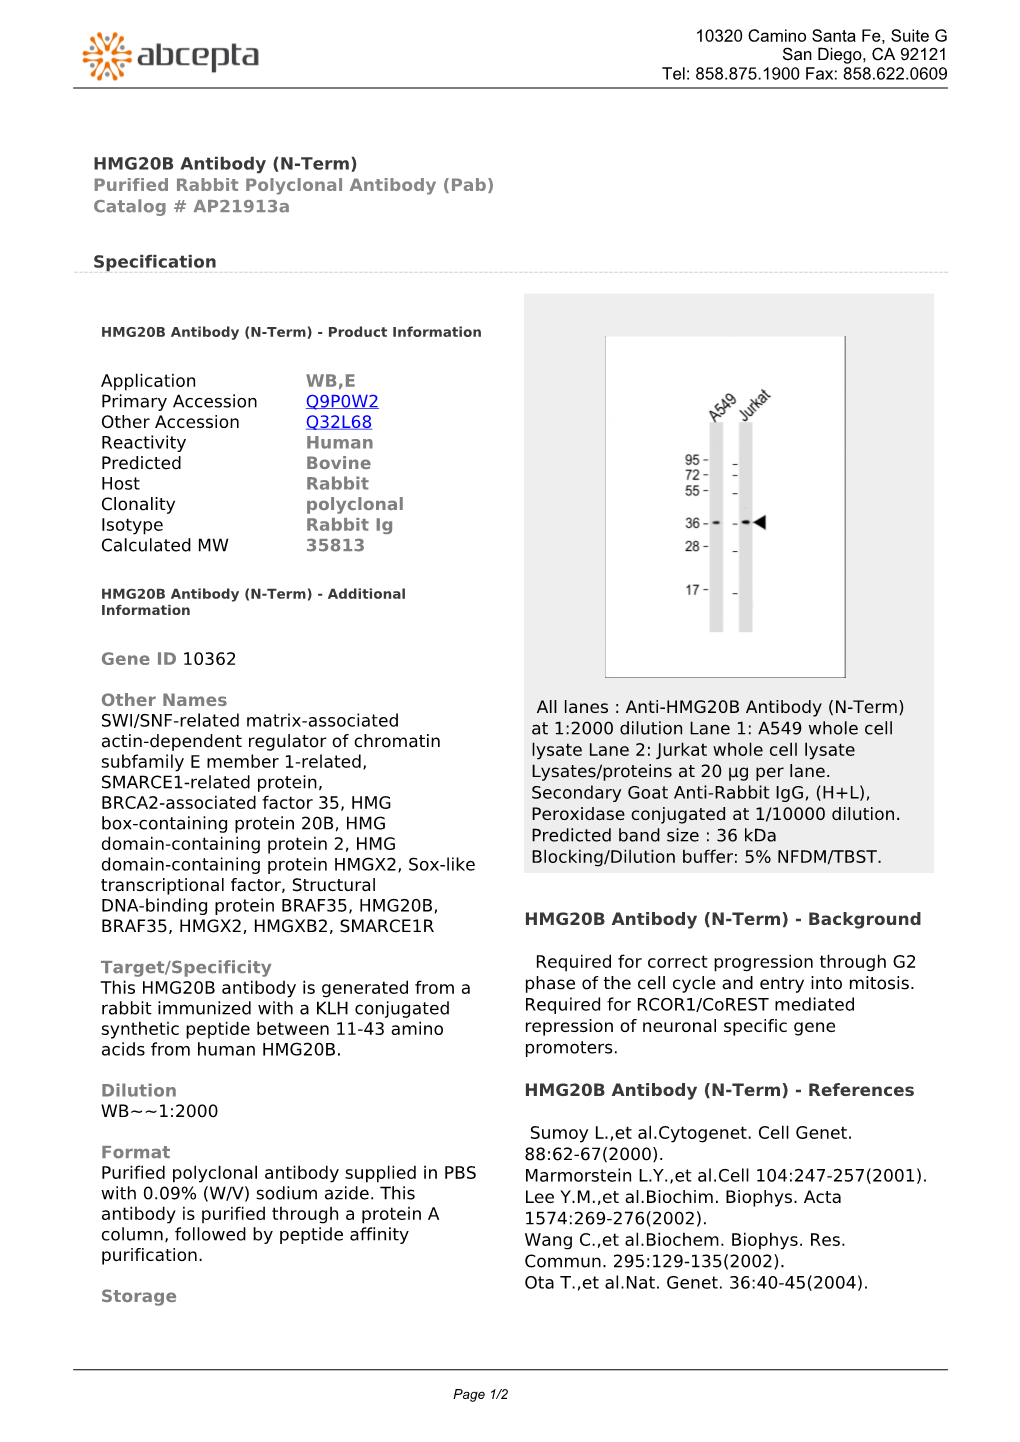 HMG20B Antibody (N-Term) Purified Rabbit Polyclonal Antibody (Pab) Catalog # Ap21913a